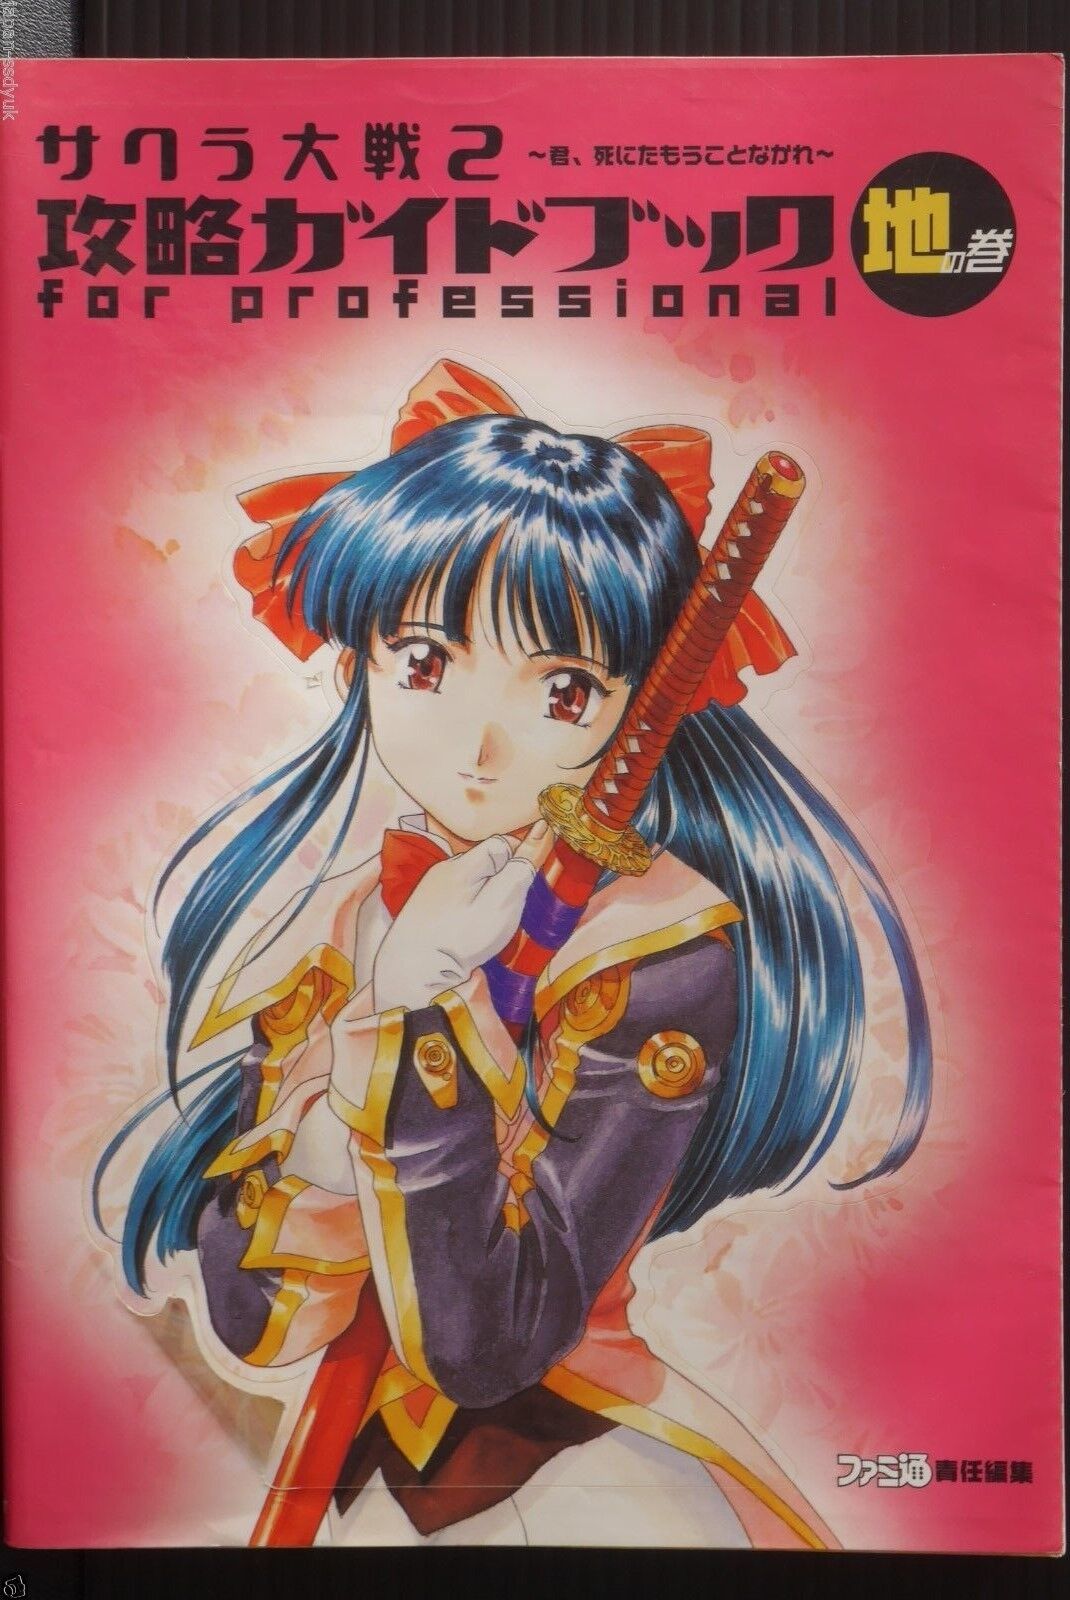 JAPAN Sakura Wars 2 Capture Guide Professional CHI no Maki (Book)